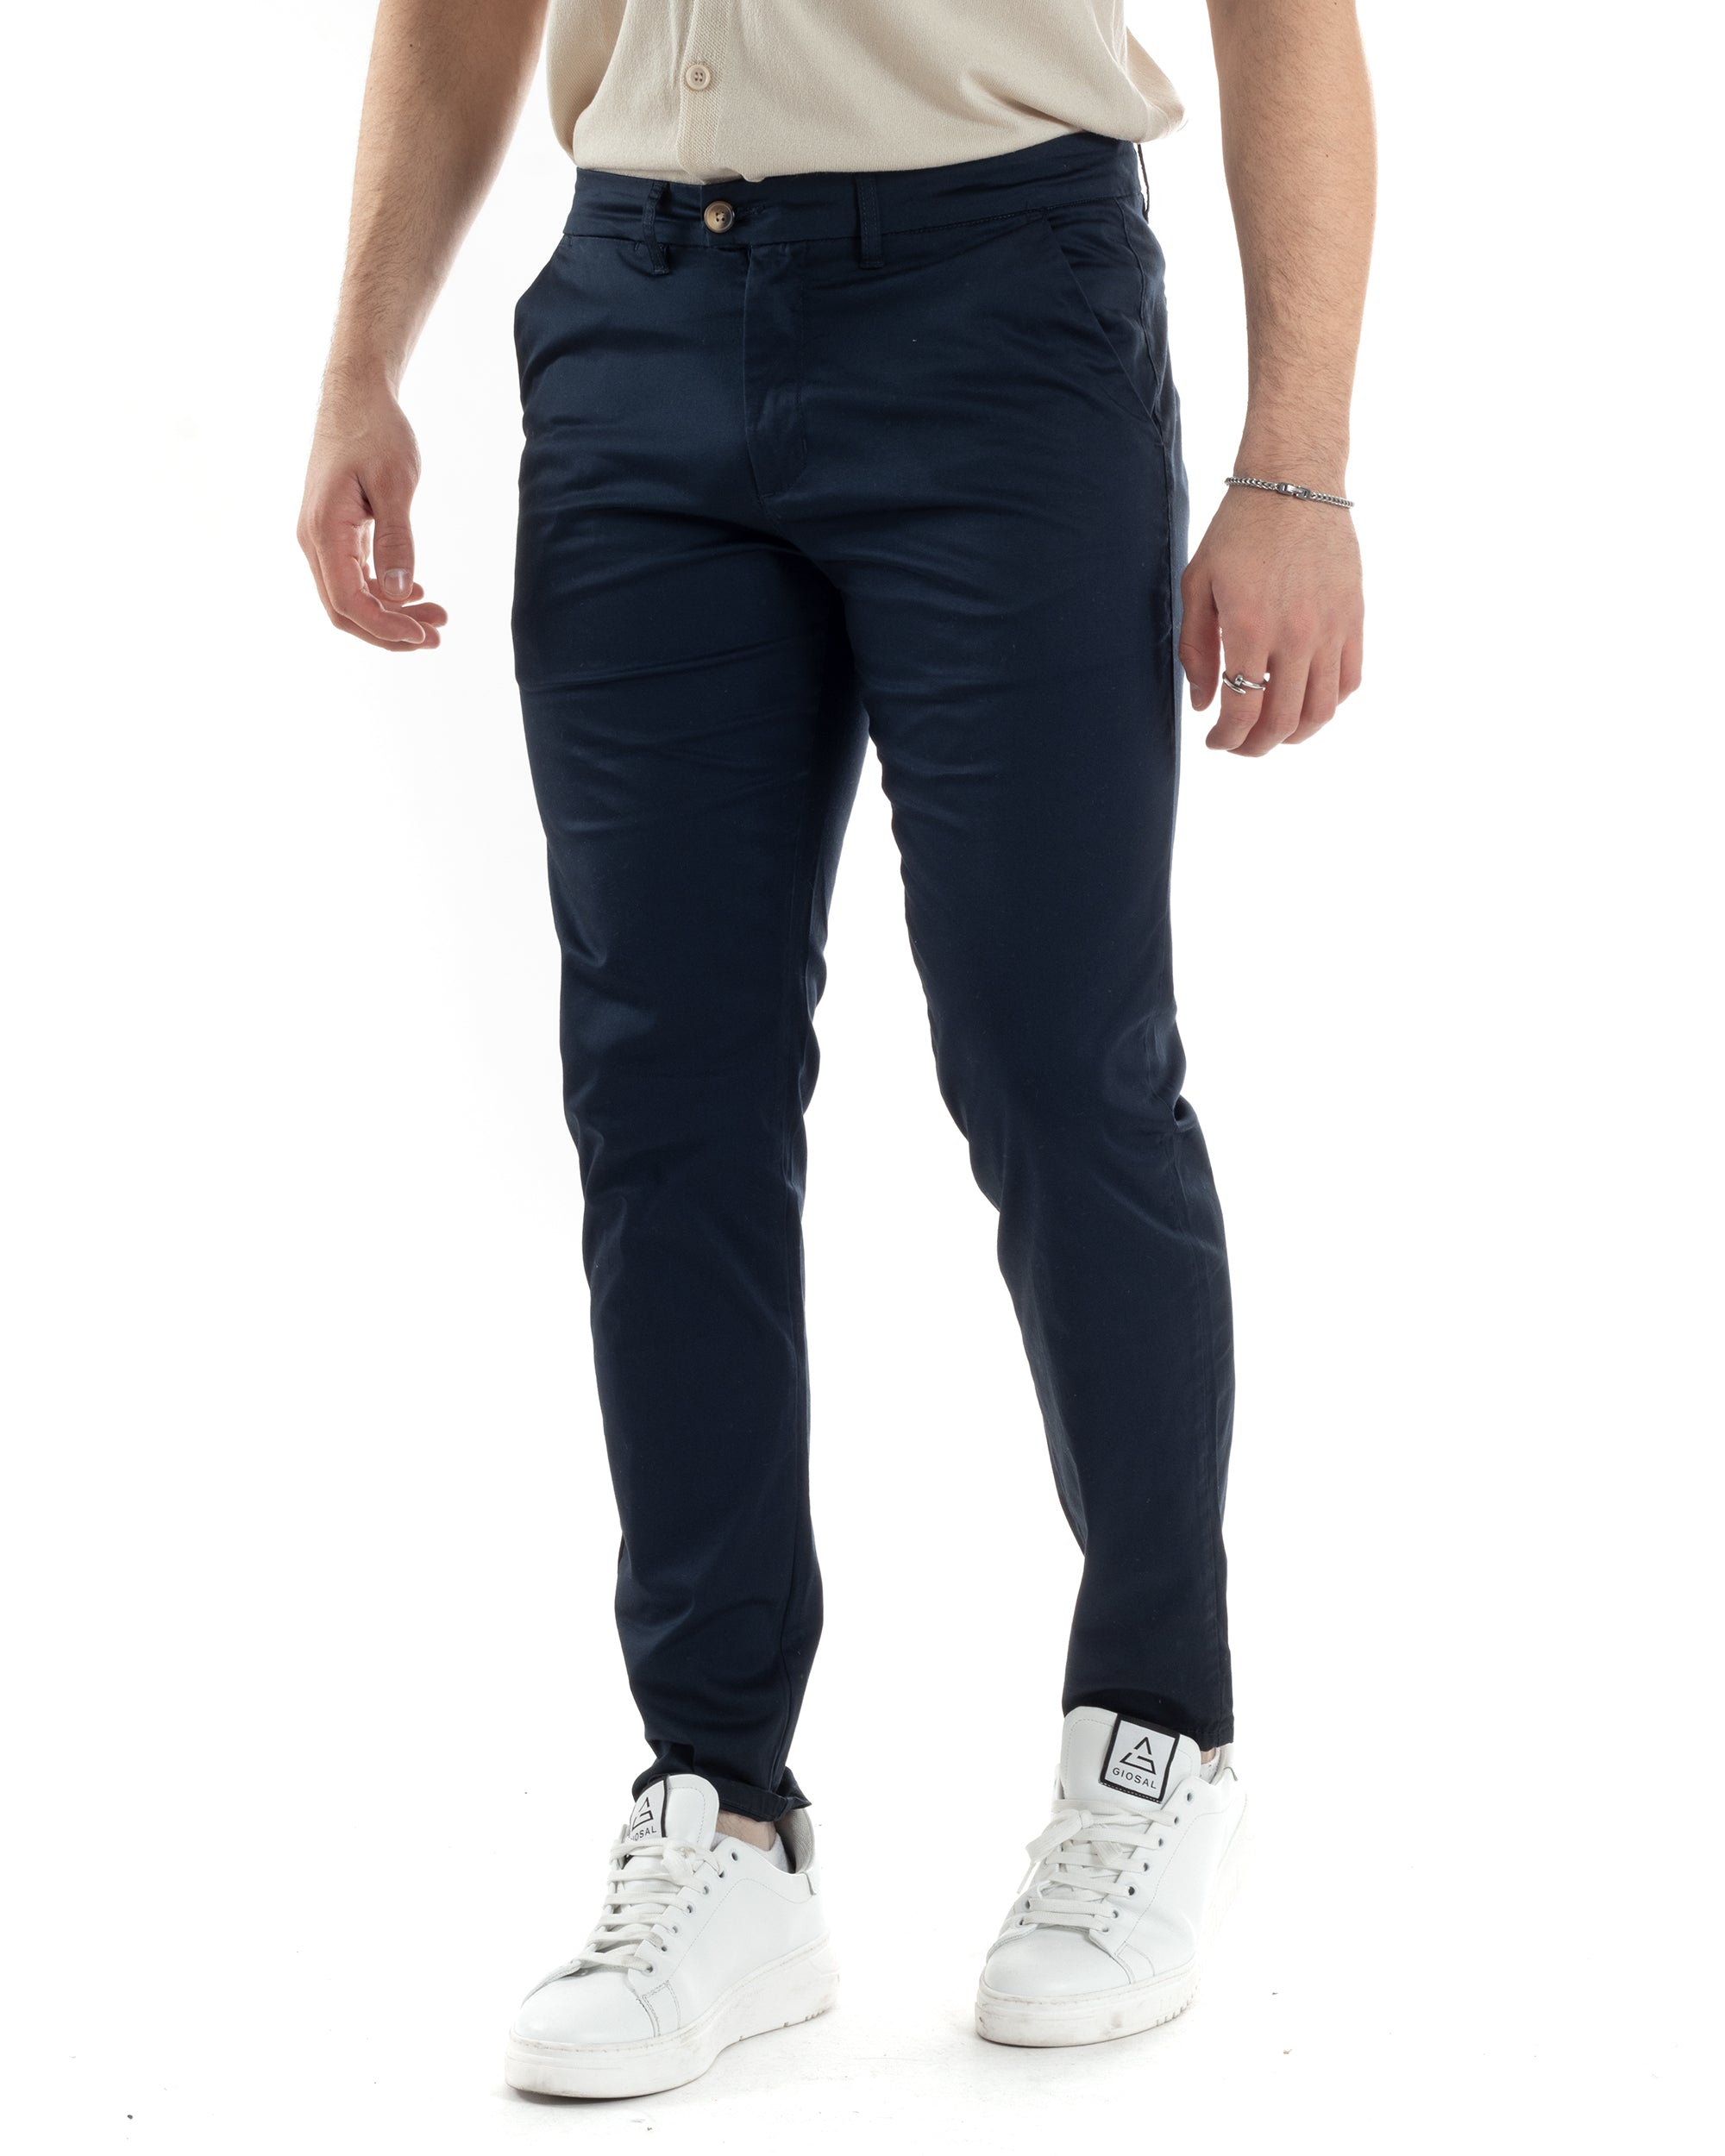 Pantaloni Uomo Cotone Raso Tasca America Slim Fit Abbottonatura Allungata Tinta Unita Blu GIOSAL-P6063A